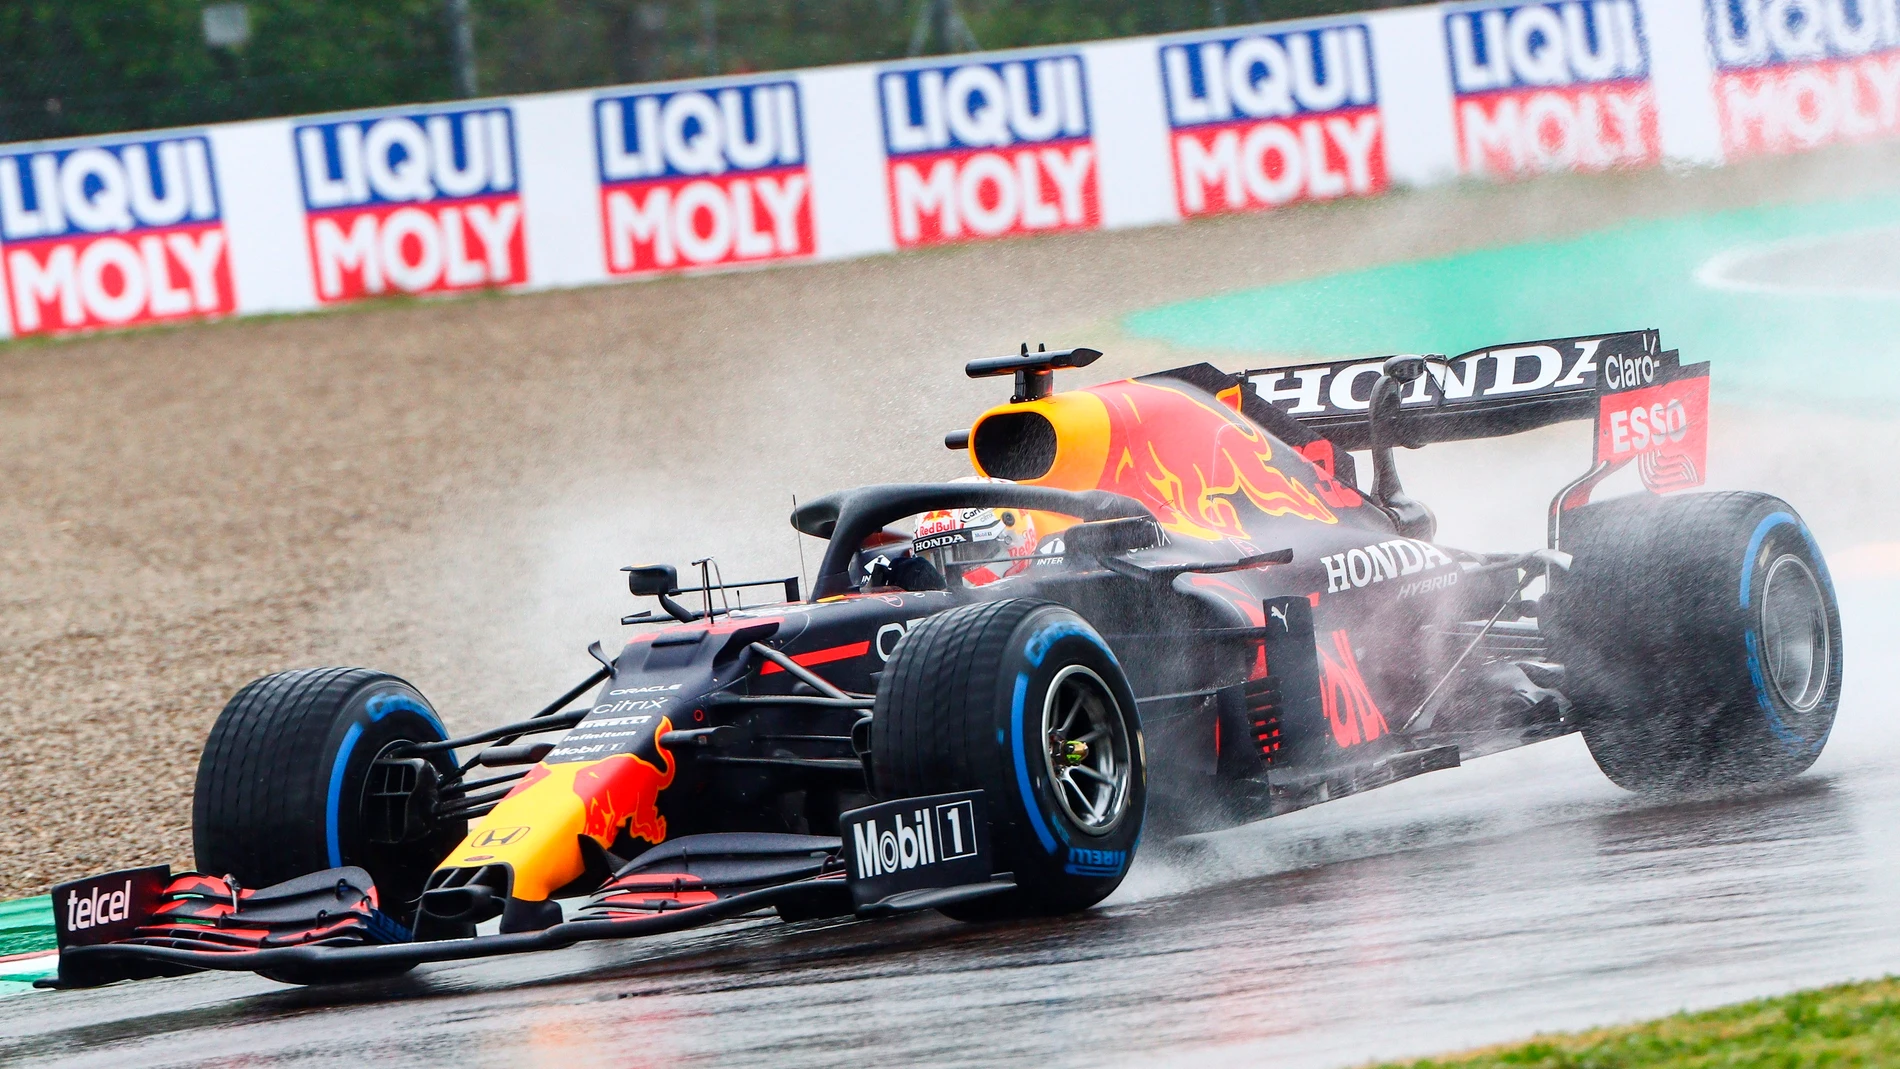 Verstappen gana el Gran Premio de Emilia Romagna tras una accidentada carrera, Sainz 5º y Alonso 11º